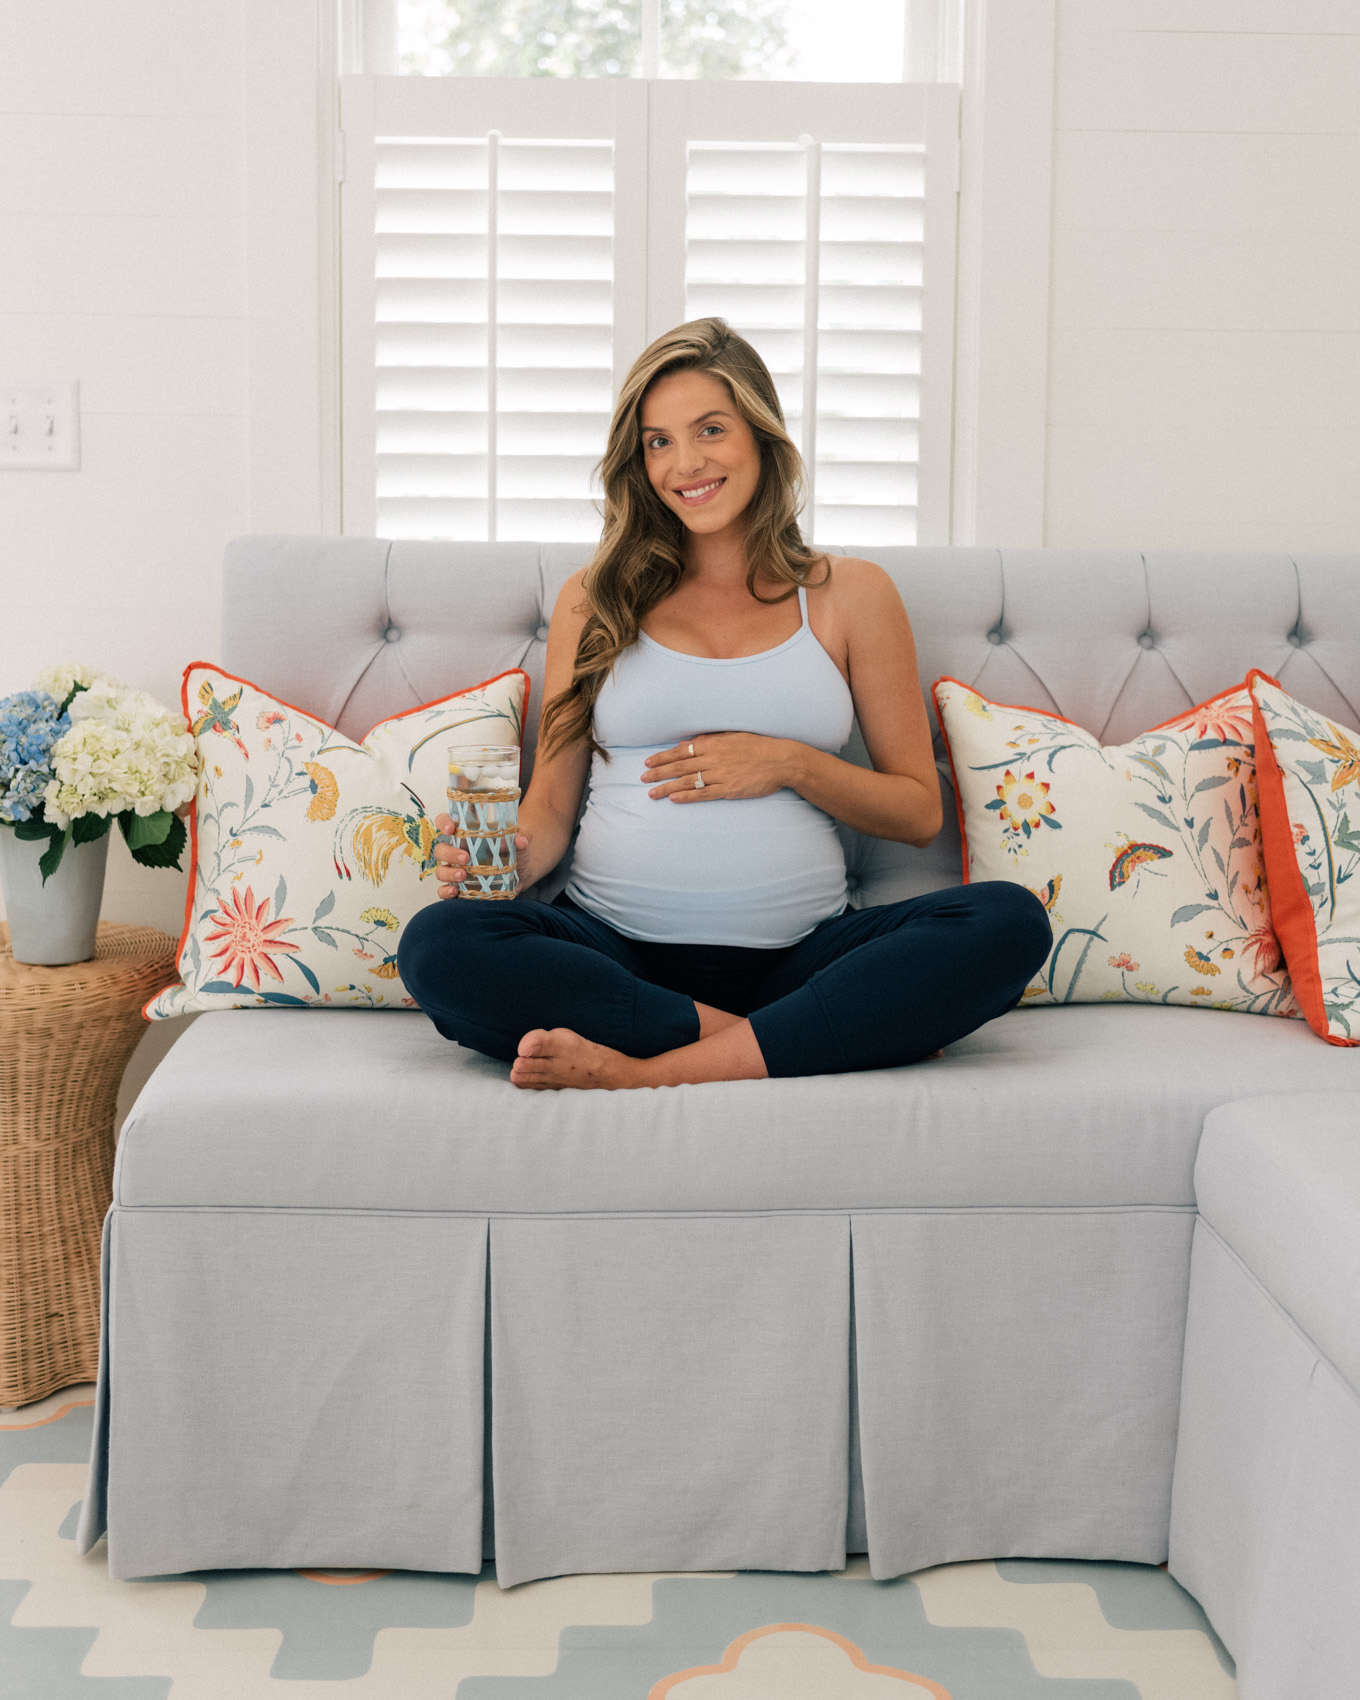 https://juliaberolzheimer.com/wp-content/uploads/2019/08/gmg-the-best-pregnancy-items-1003734.jpg